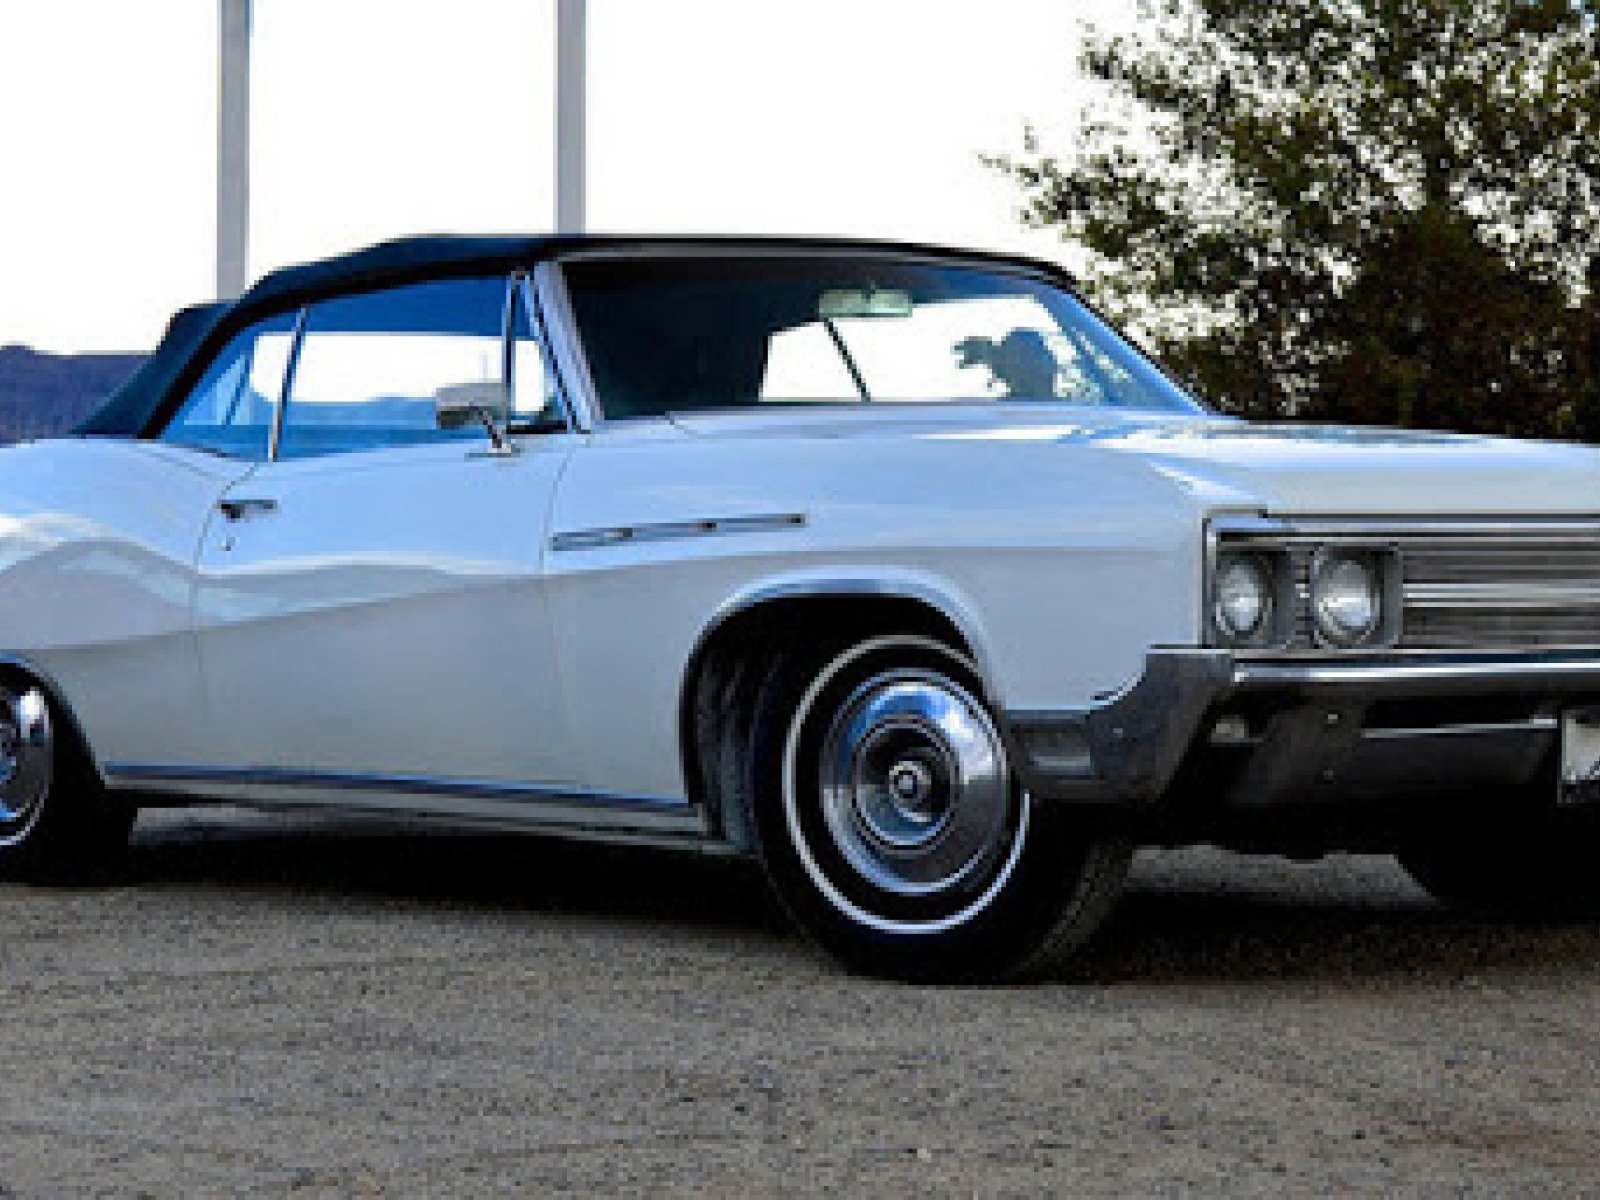 1968 Buick LeSabre